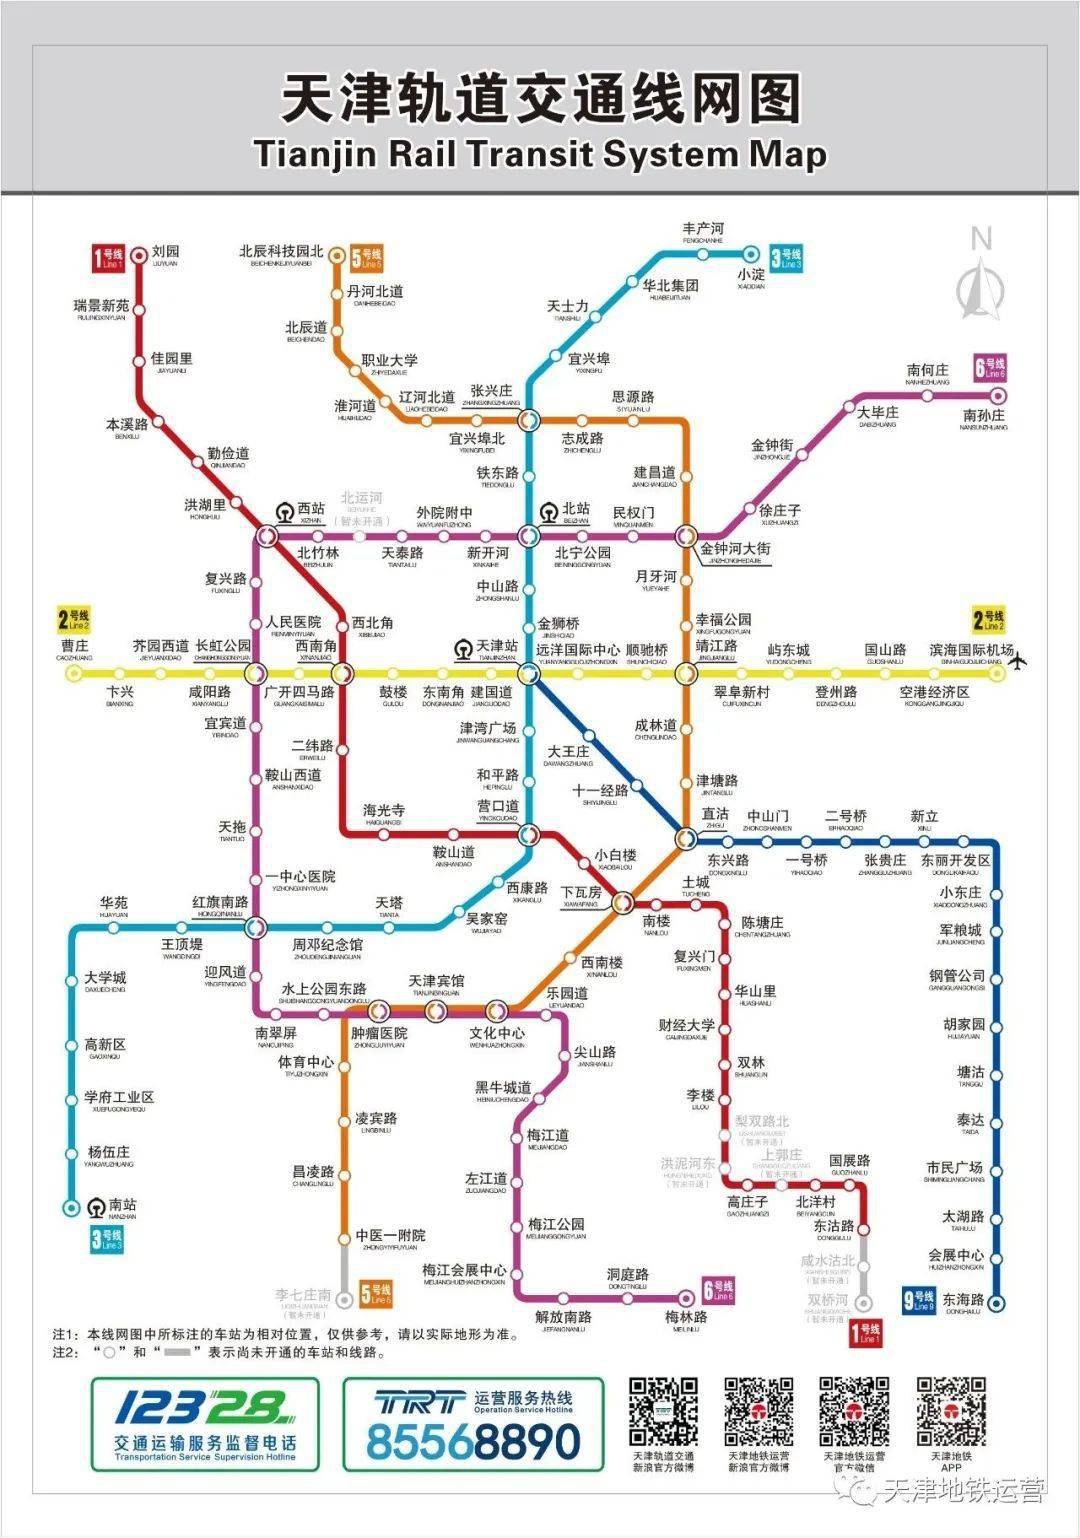 天津地铁2,3号线将由这家企业接管运营!